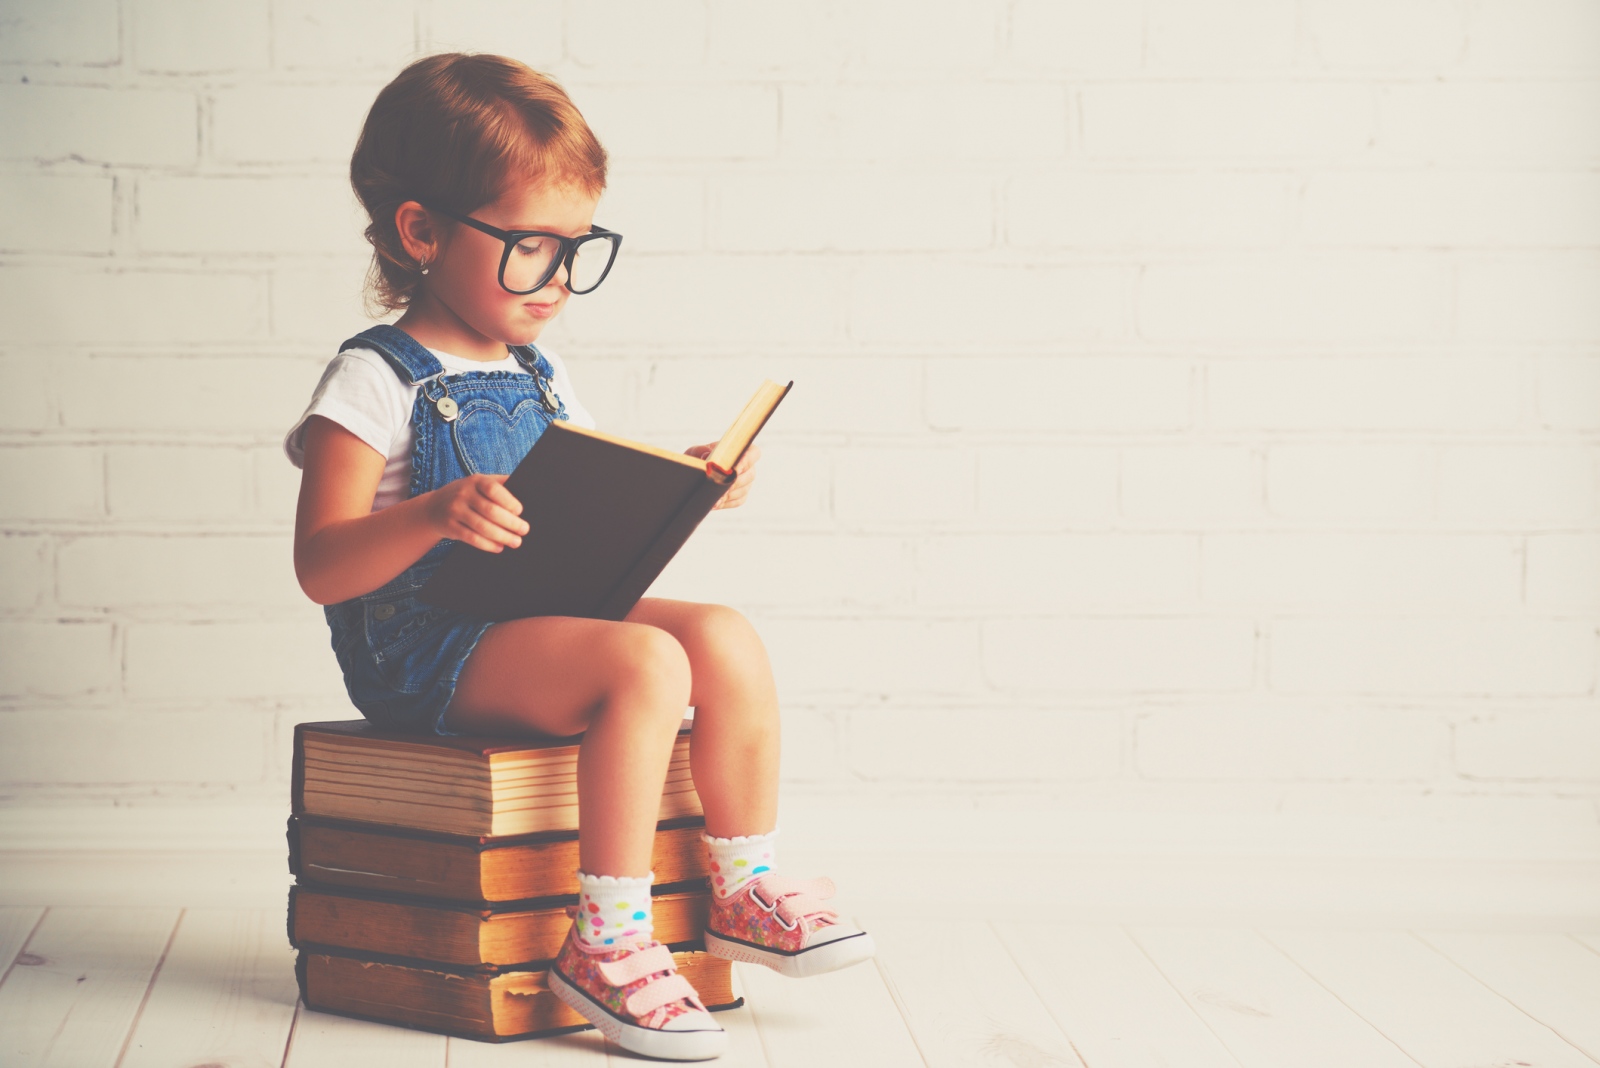 Egy neurológus üzenete a szülőkhöz: “Ne tanítsátok már 3 évesen olvasni a gyereket”!